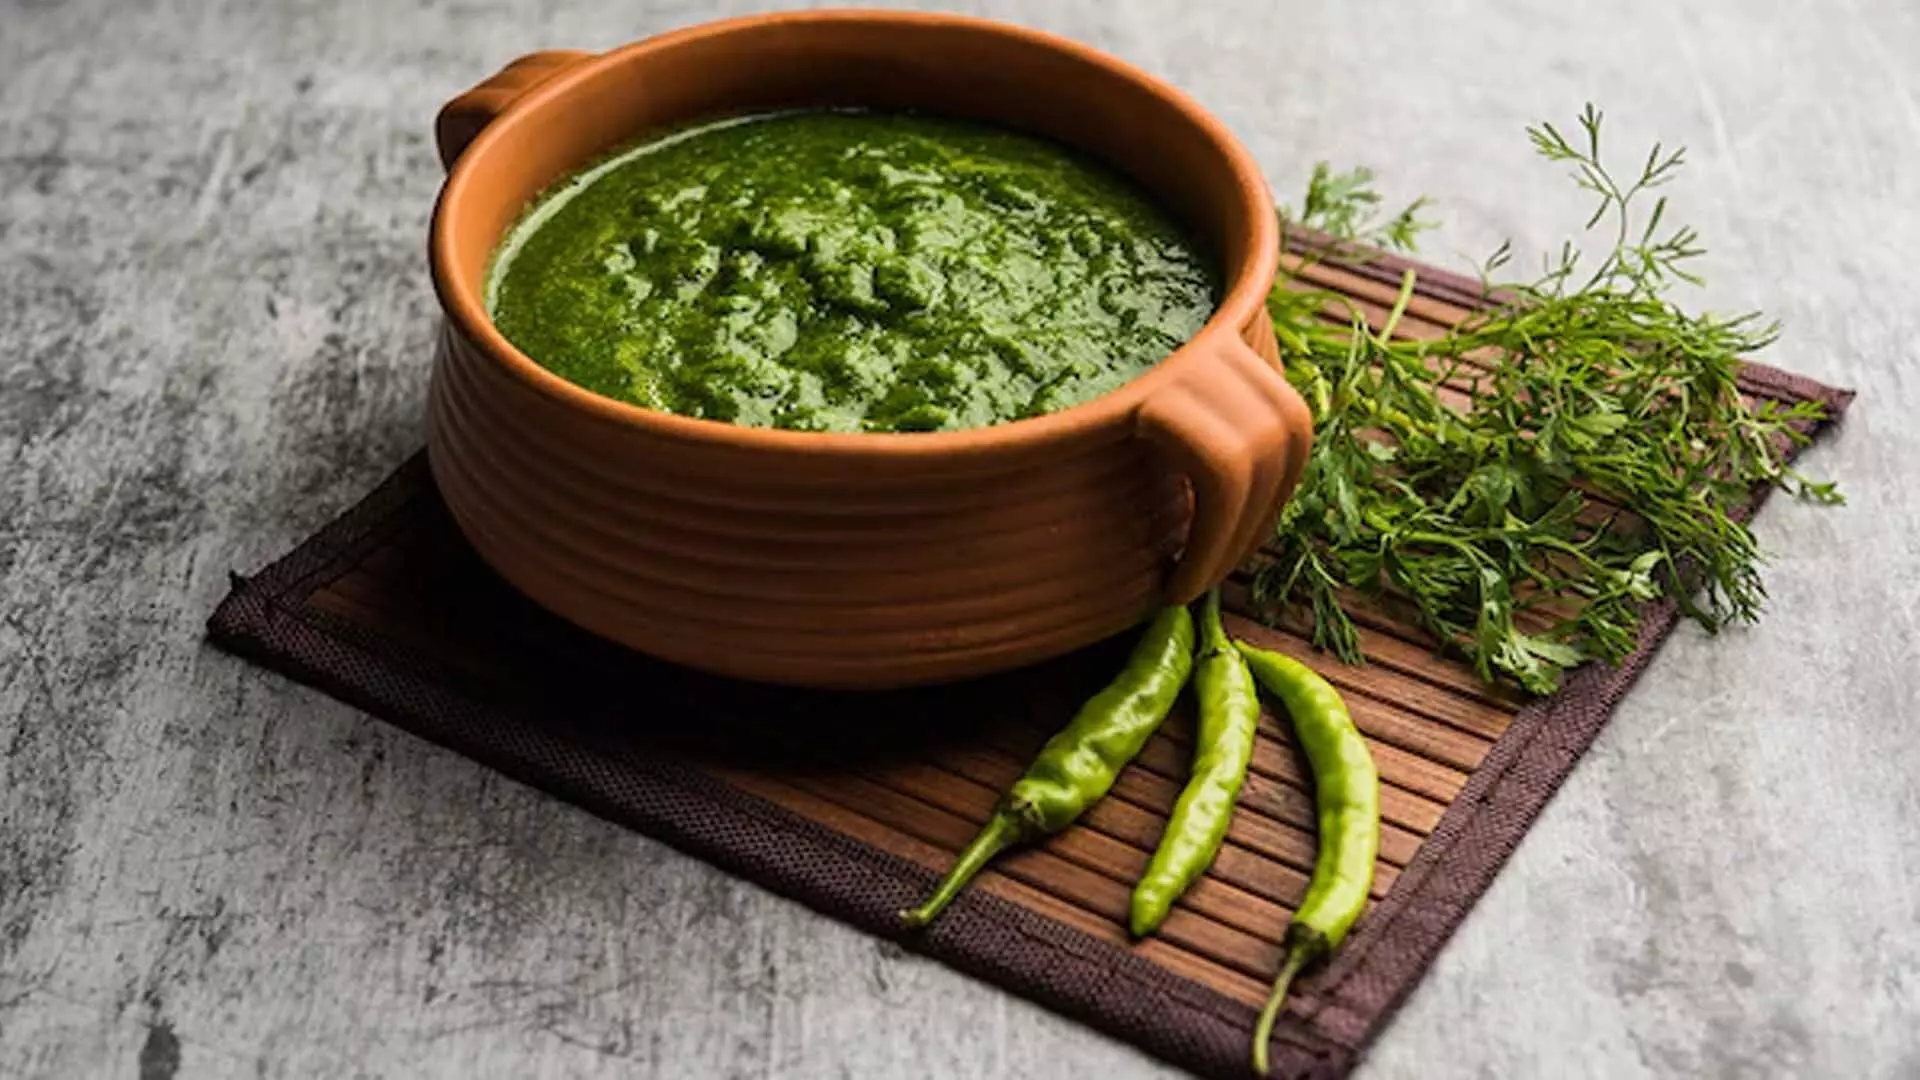 Recipes: 5 महाराष्ट्रीयन चटनी रेसिपी जो आपके खाने में लाजवाब स्वाद भर देंगी